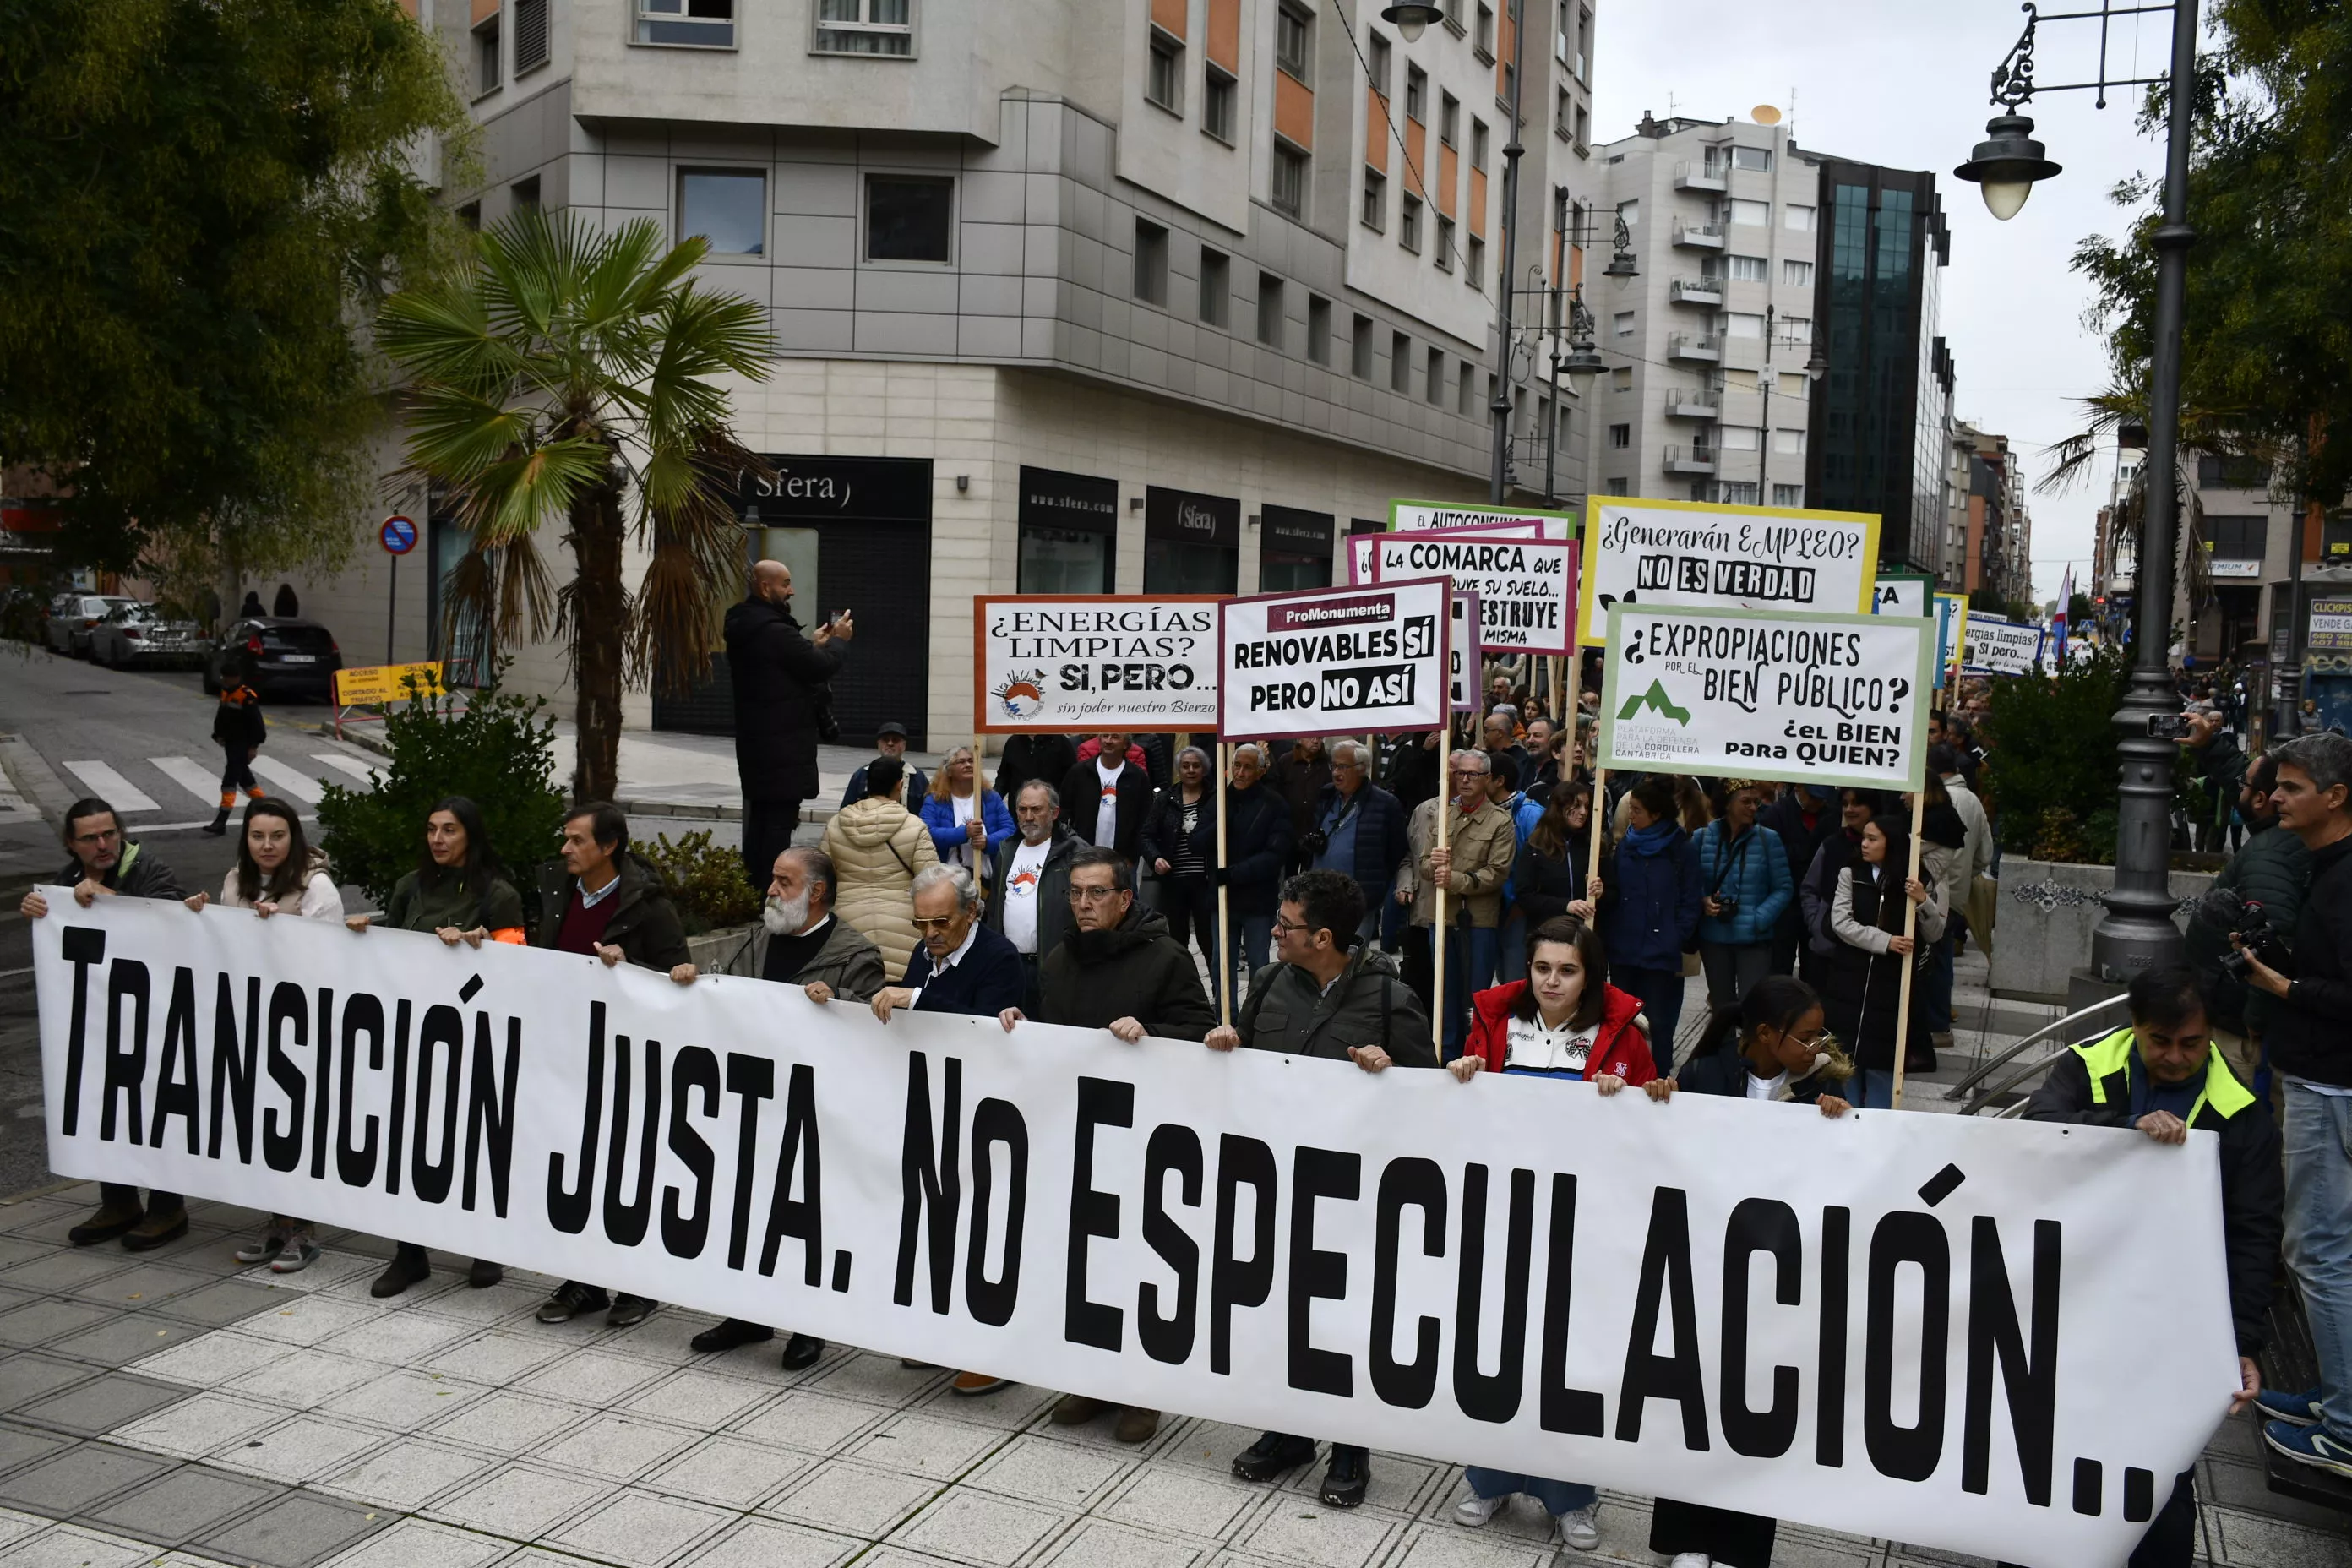  Manifestación contra la tramitación de macroparques eólicos y solares en El Bierzo